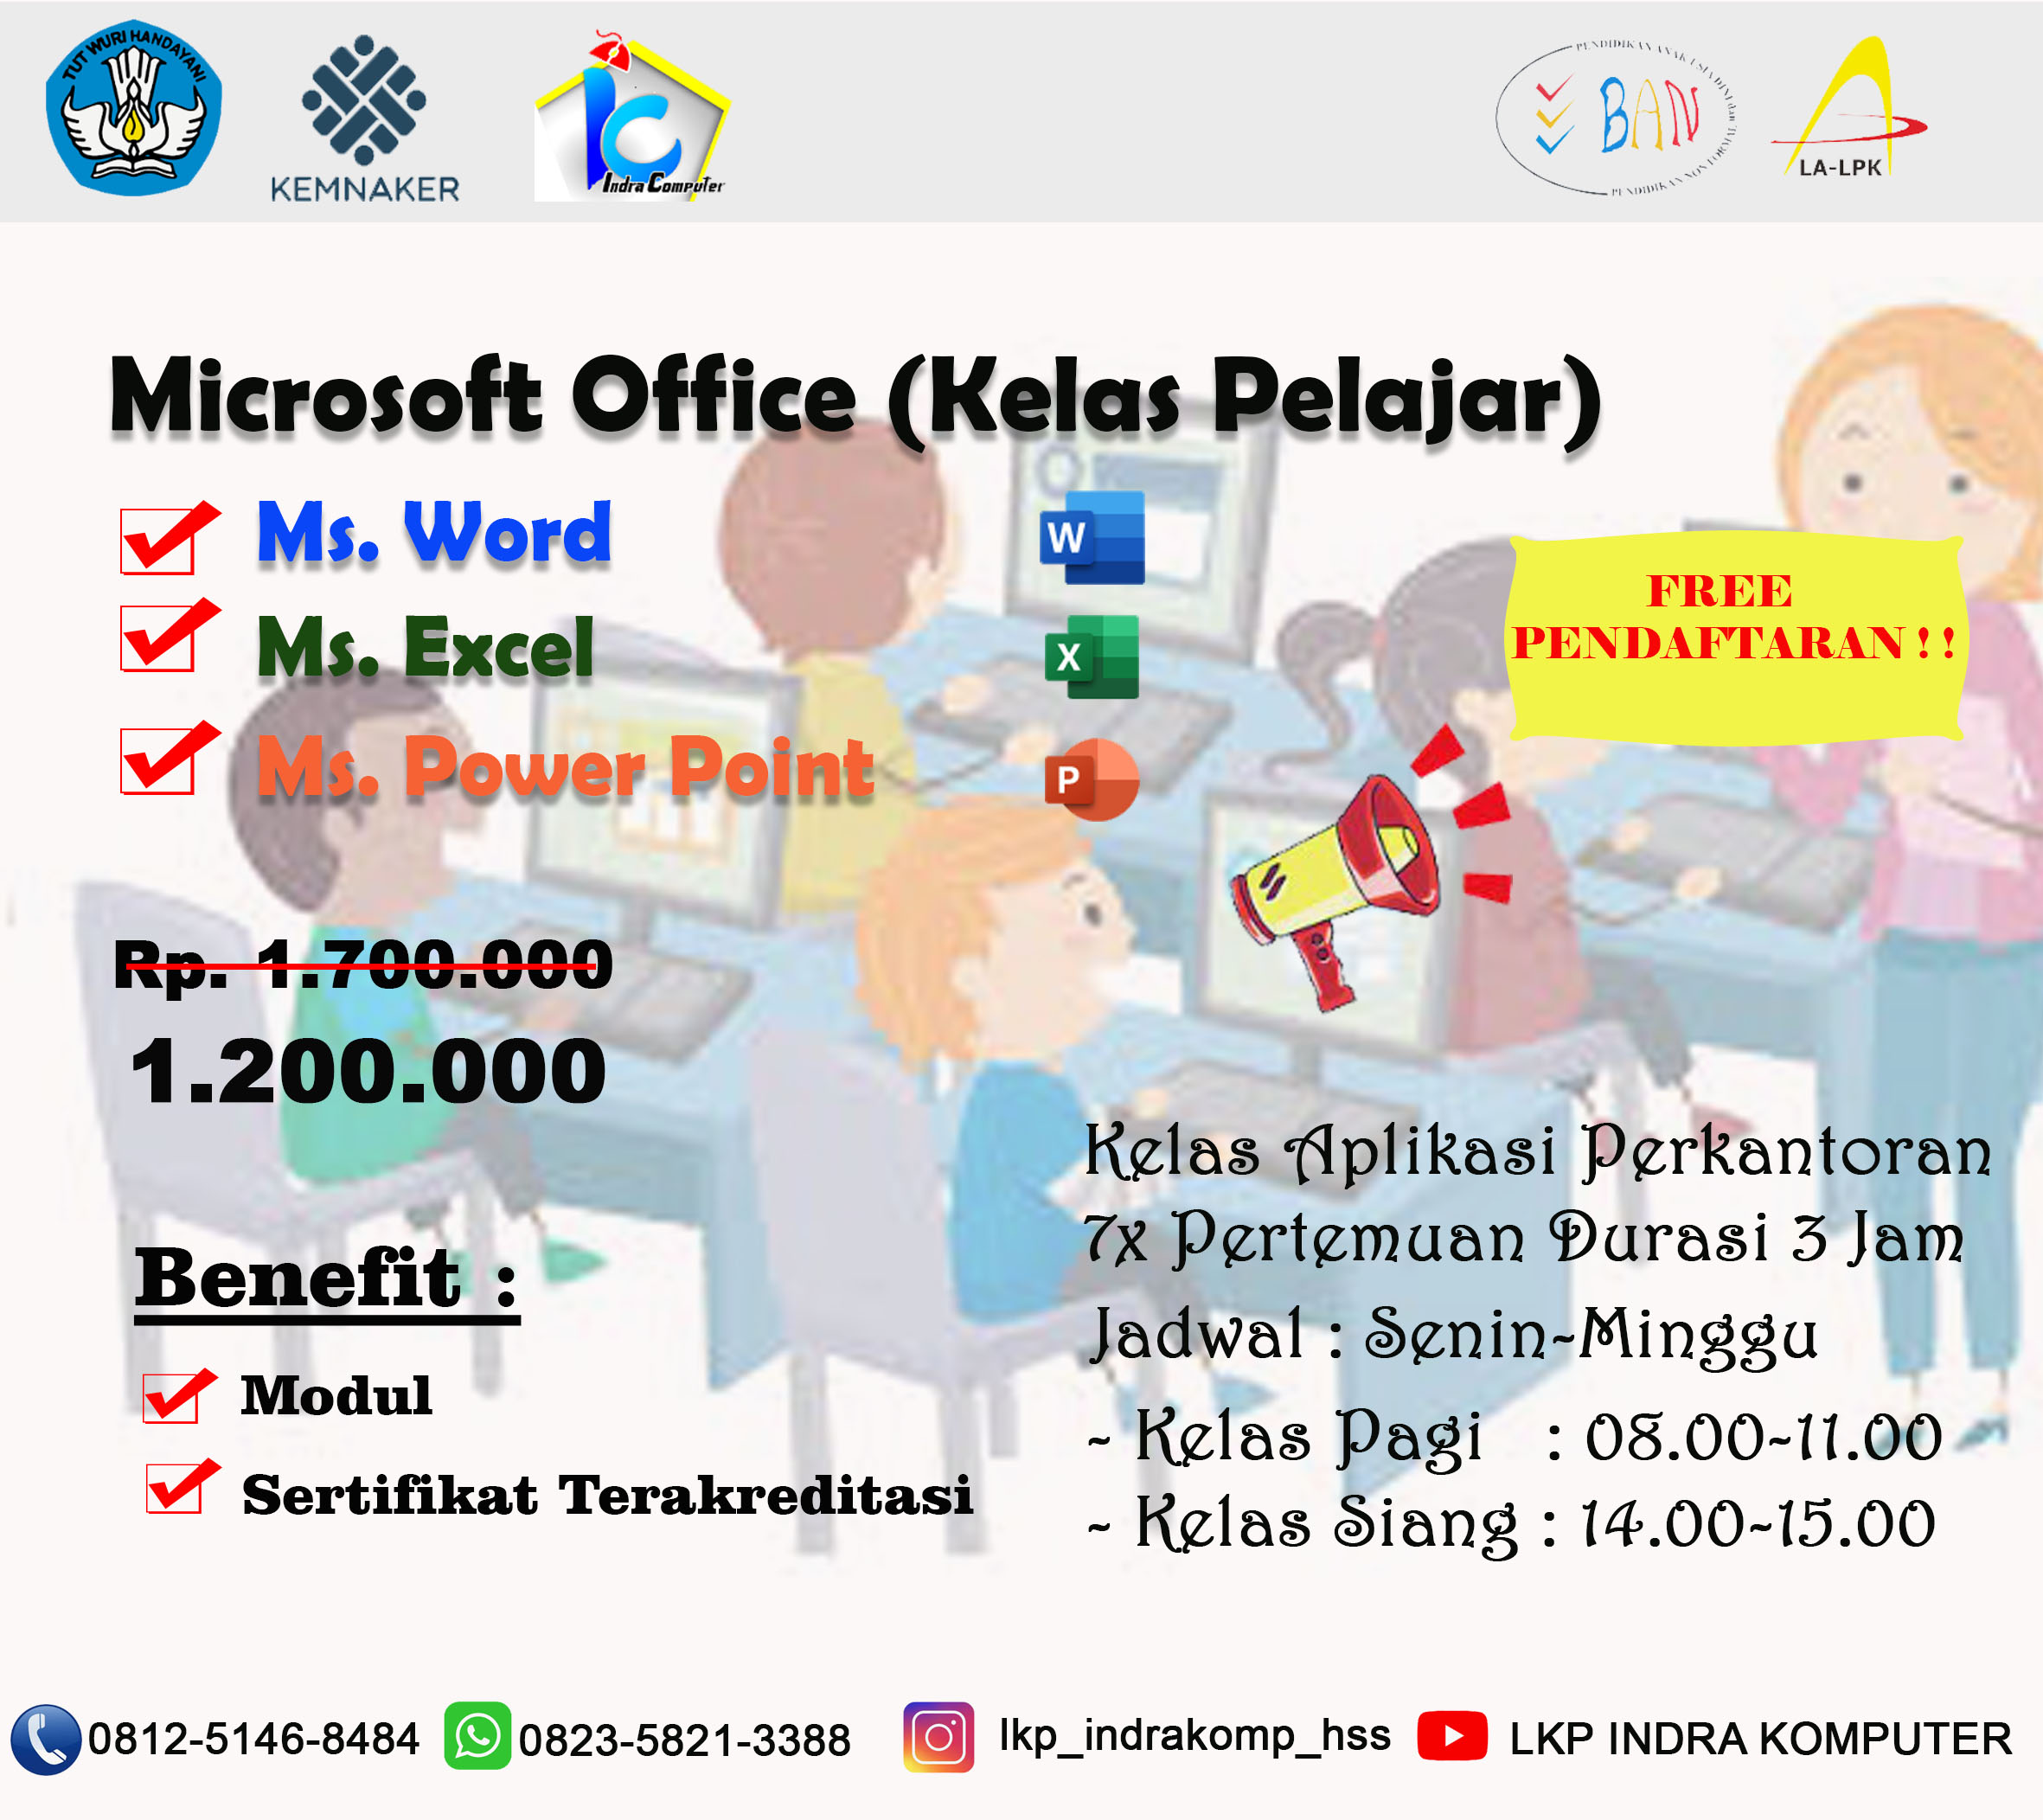 Microsoft Office (Kelas Pelajar)